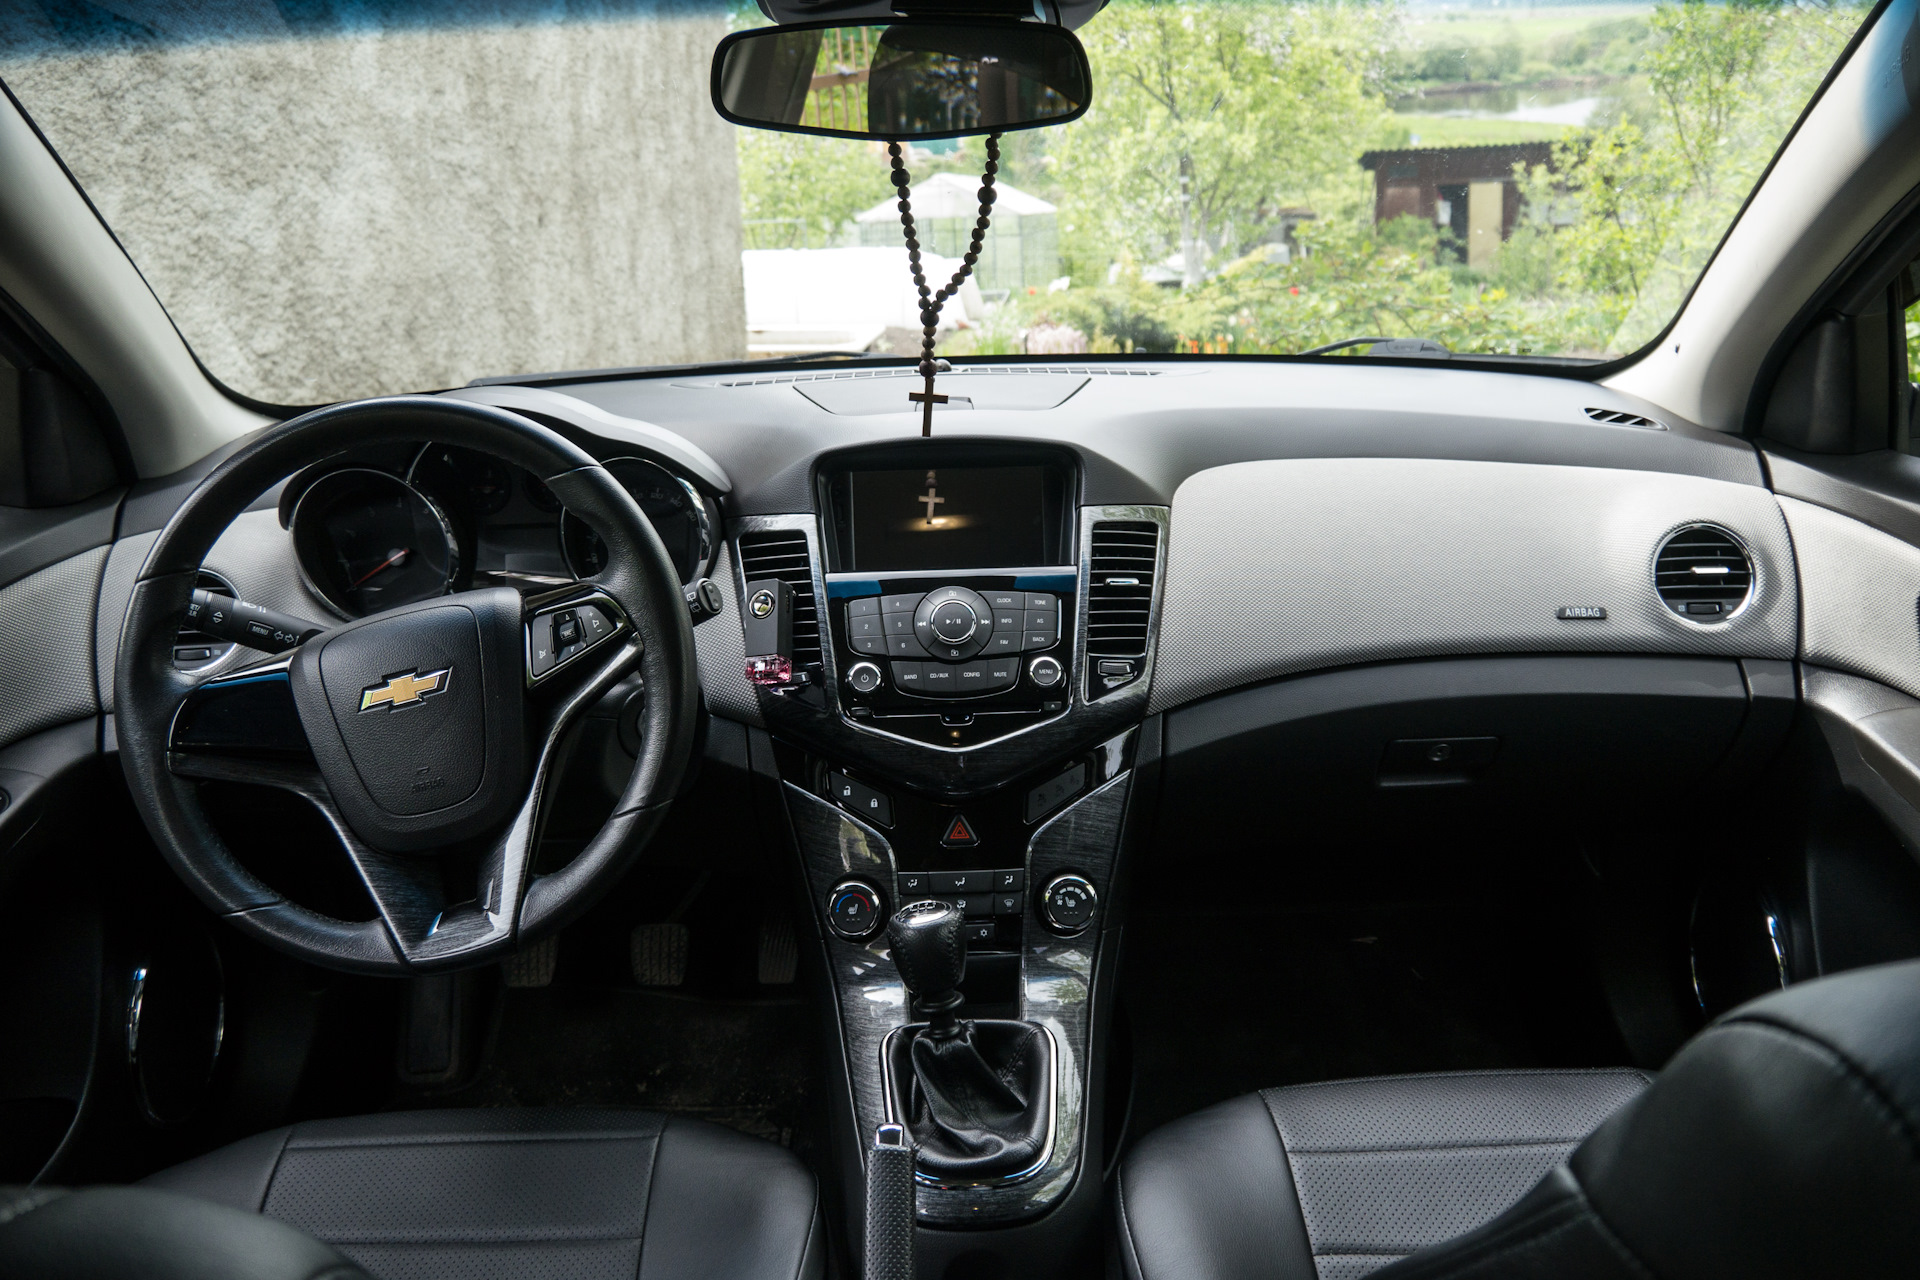 Chevrolet Cruze 2012 салон